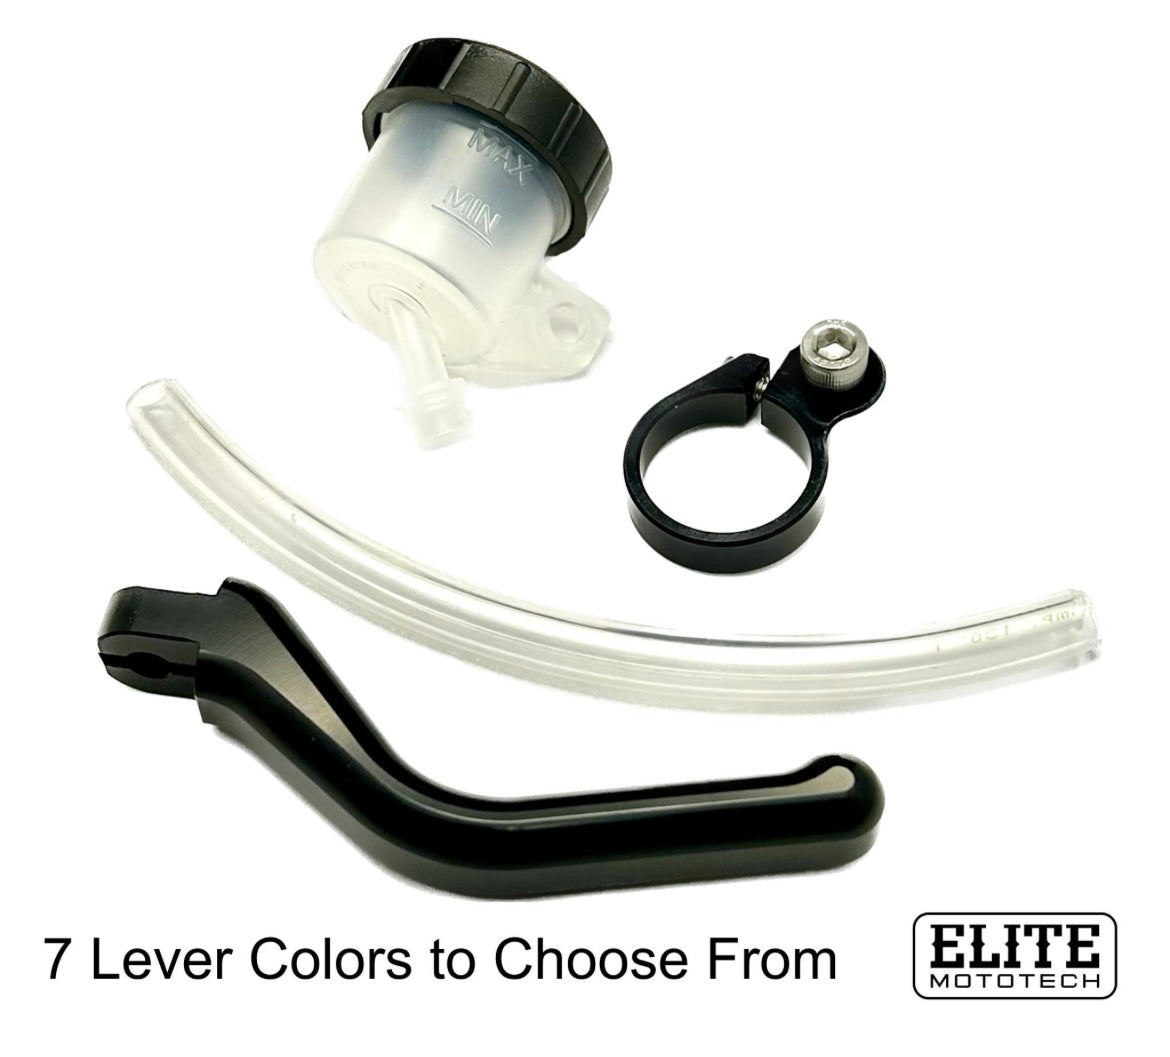 Elite Mototech Brembo RCS19 Lever/Reservoir kit